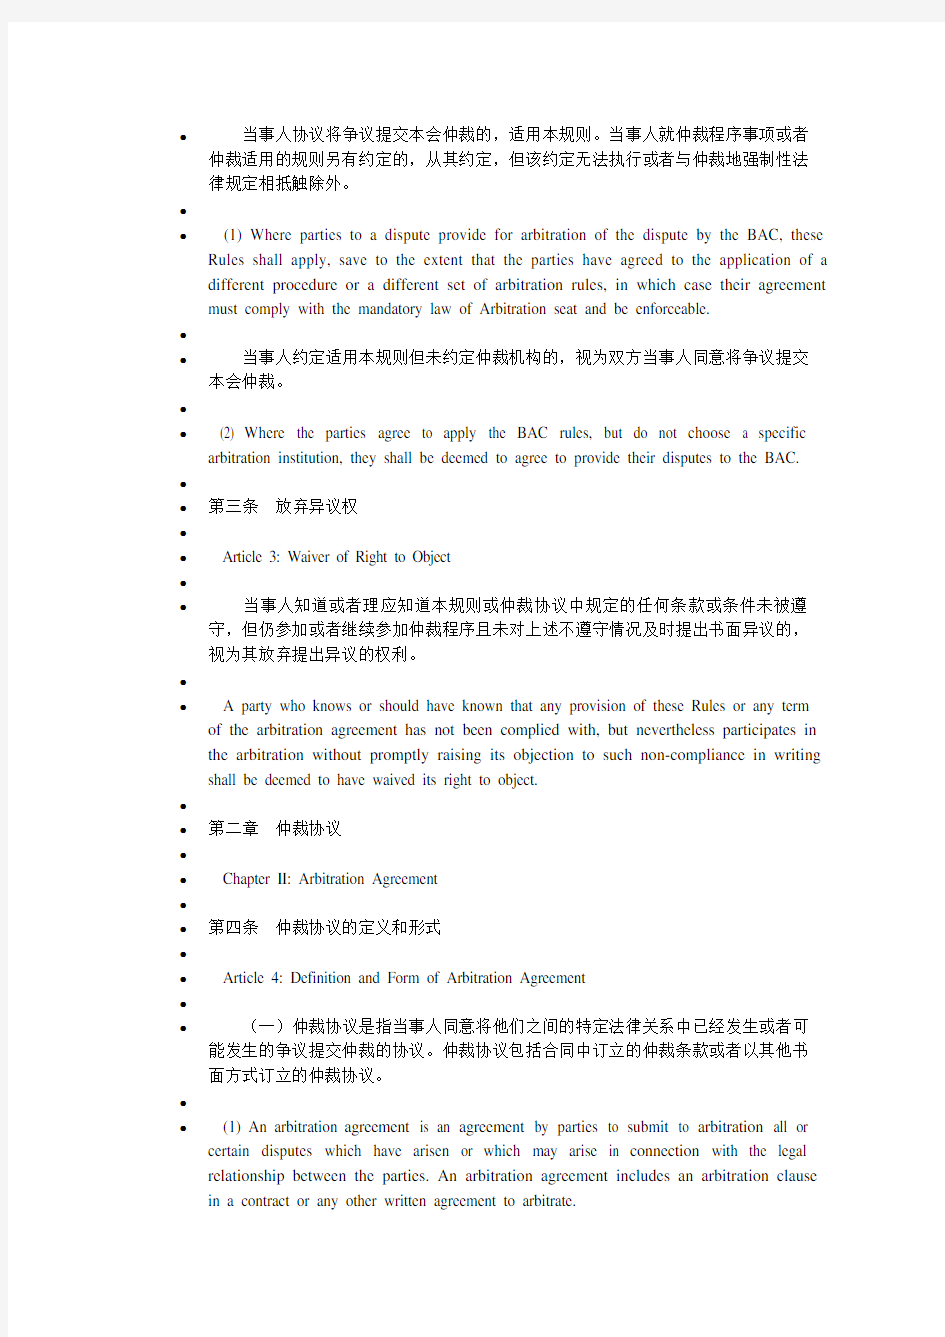 北京仲裁委员会仲裁规则中英文对照汇总